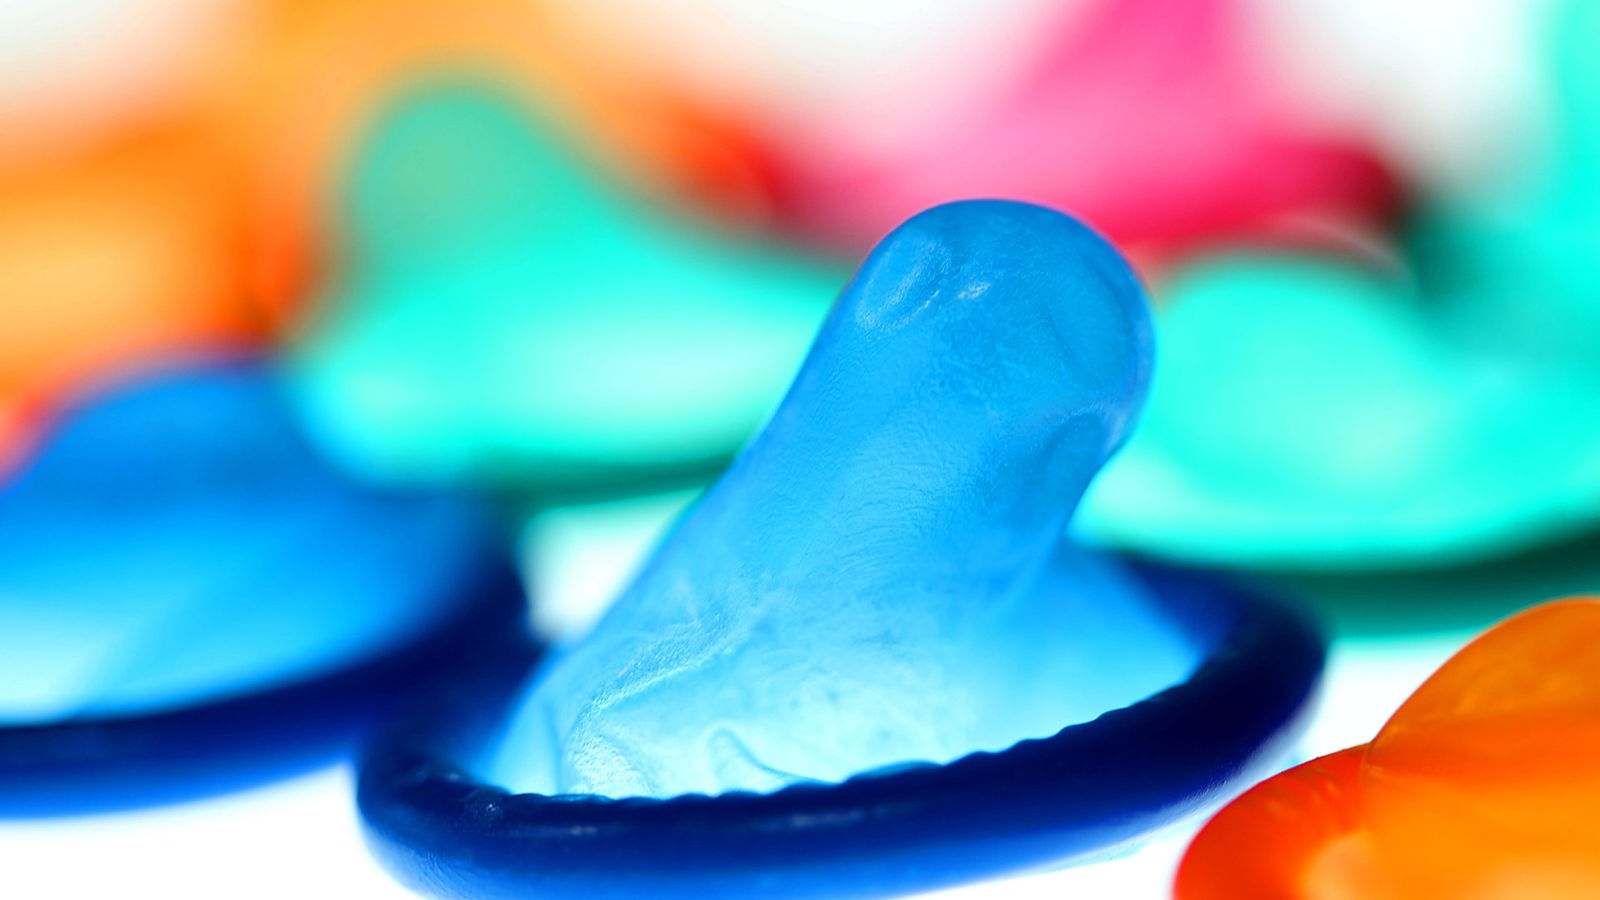 Welche Verhütungsmittel verhindern dass Spermien in die Gebärmutter gelangen?